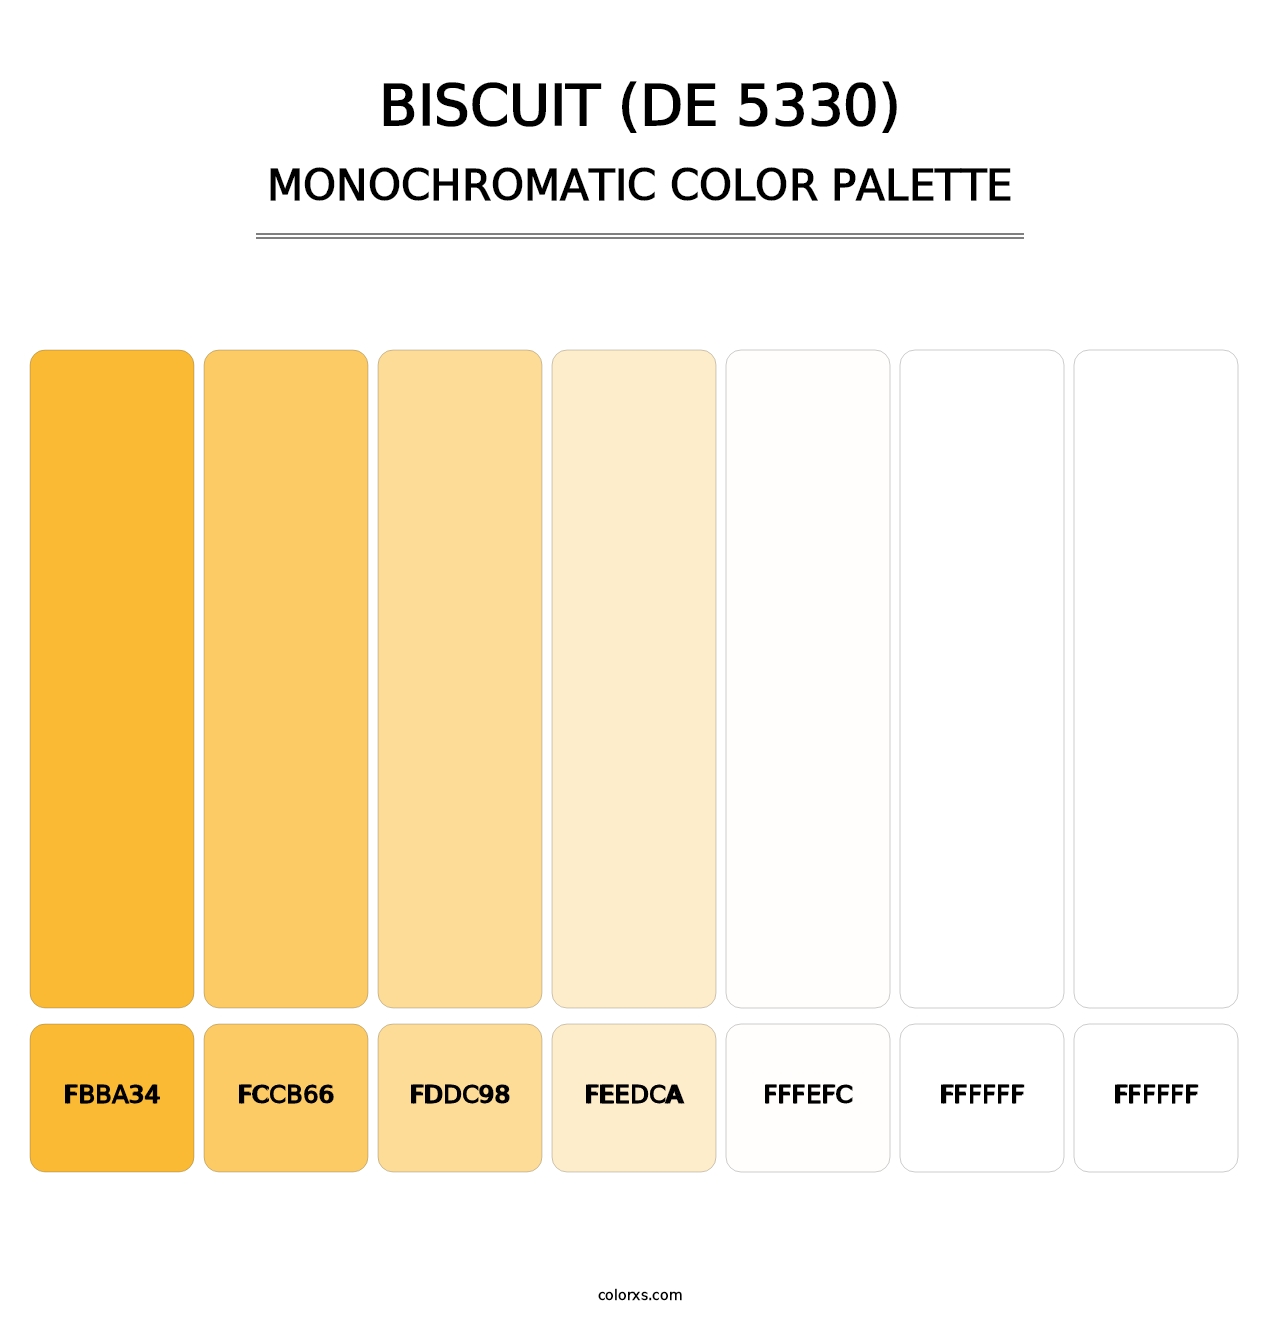 Biscuit (DE 5330) - Monochromatic Color Palette